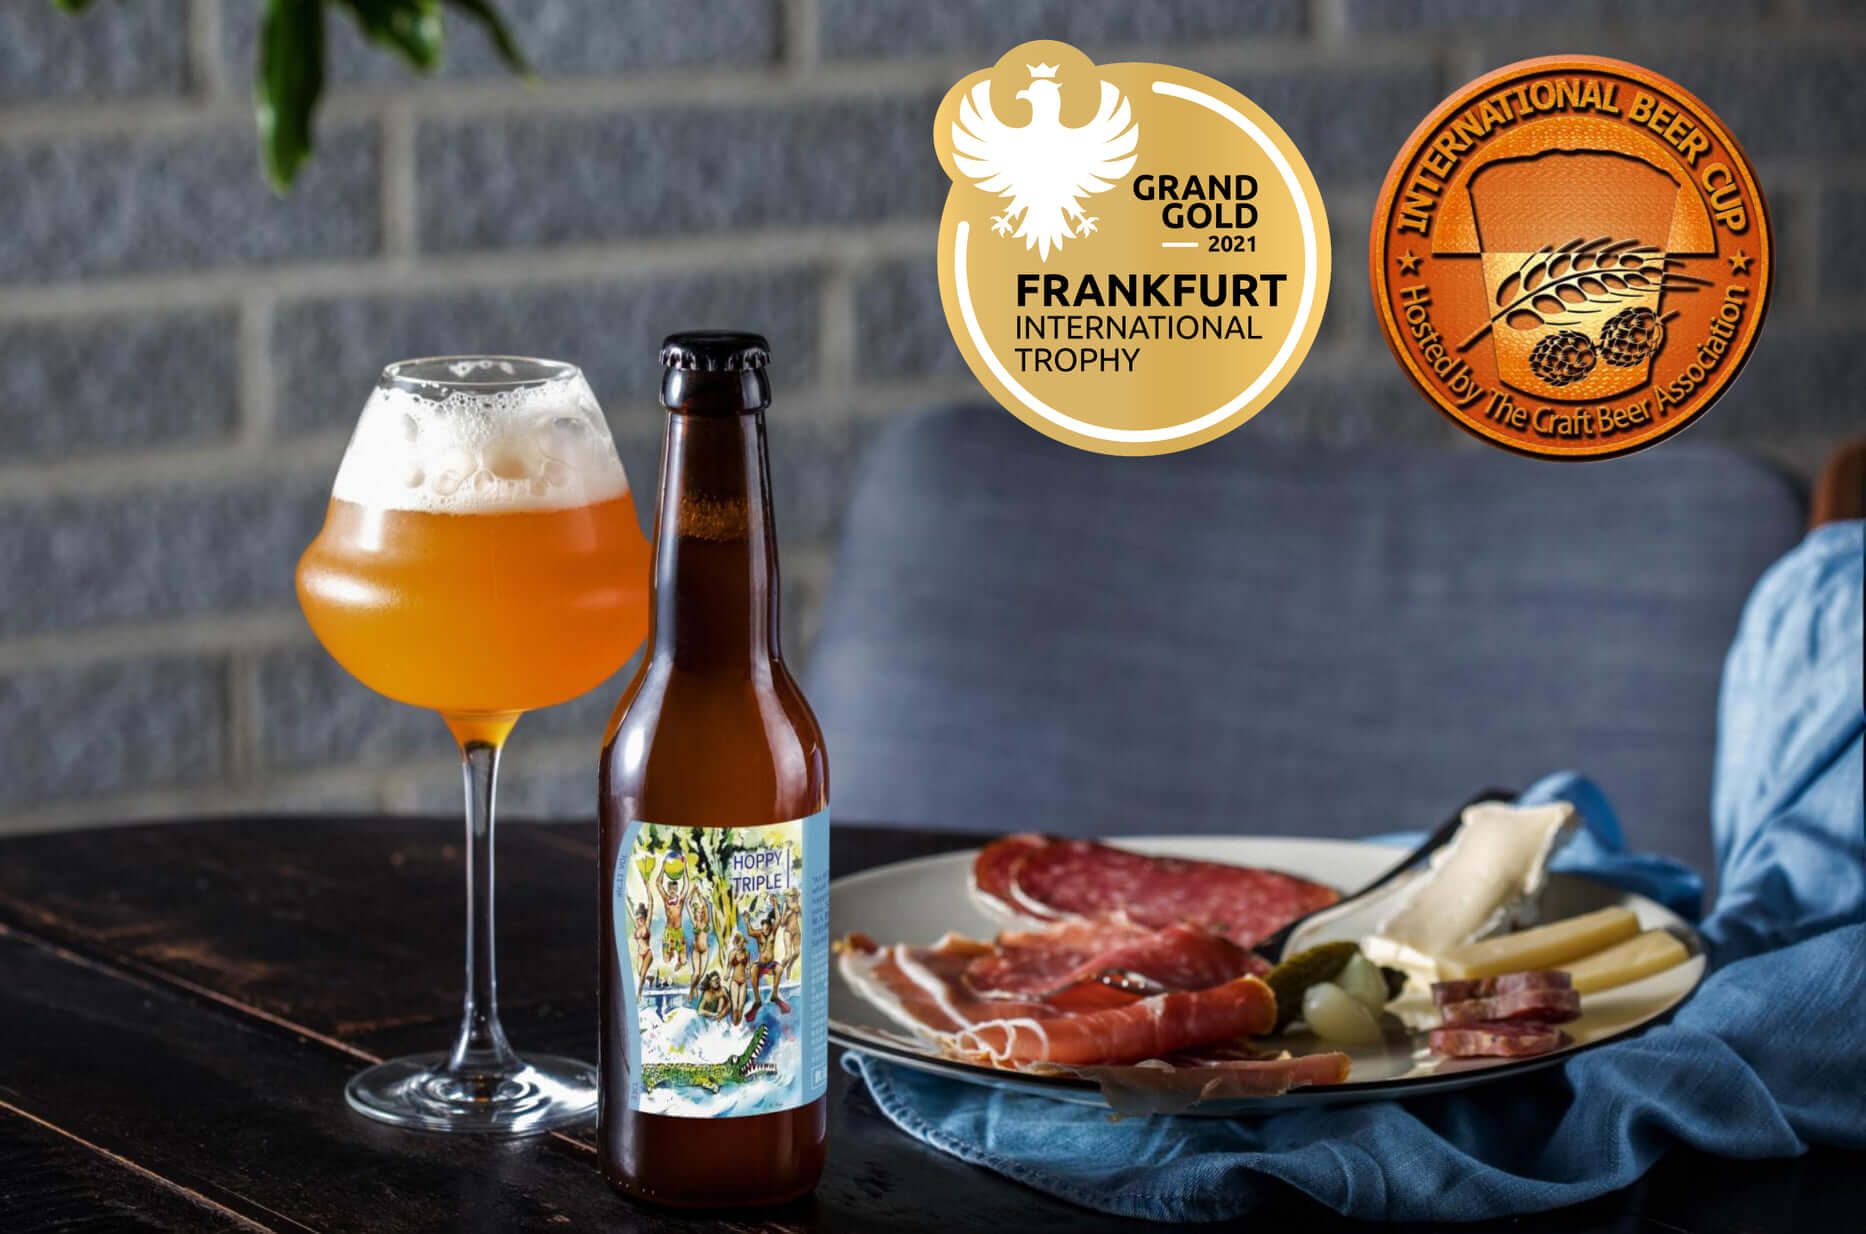 我們的經典酒款 三劍客(Hoppy Triple) 榮獲2021年法蘭克福國際競賽(Frankfurt International Trophy)大金獎(Grand Gold)!!!<br><br>